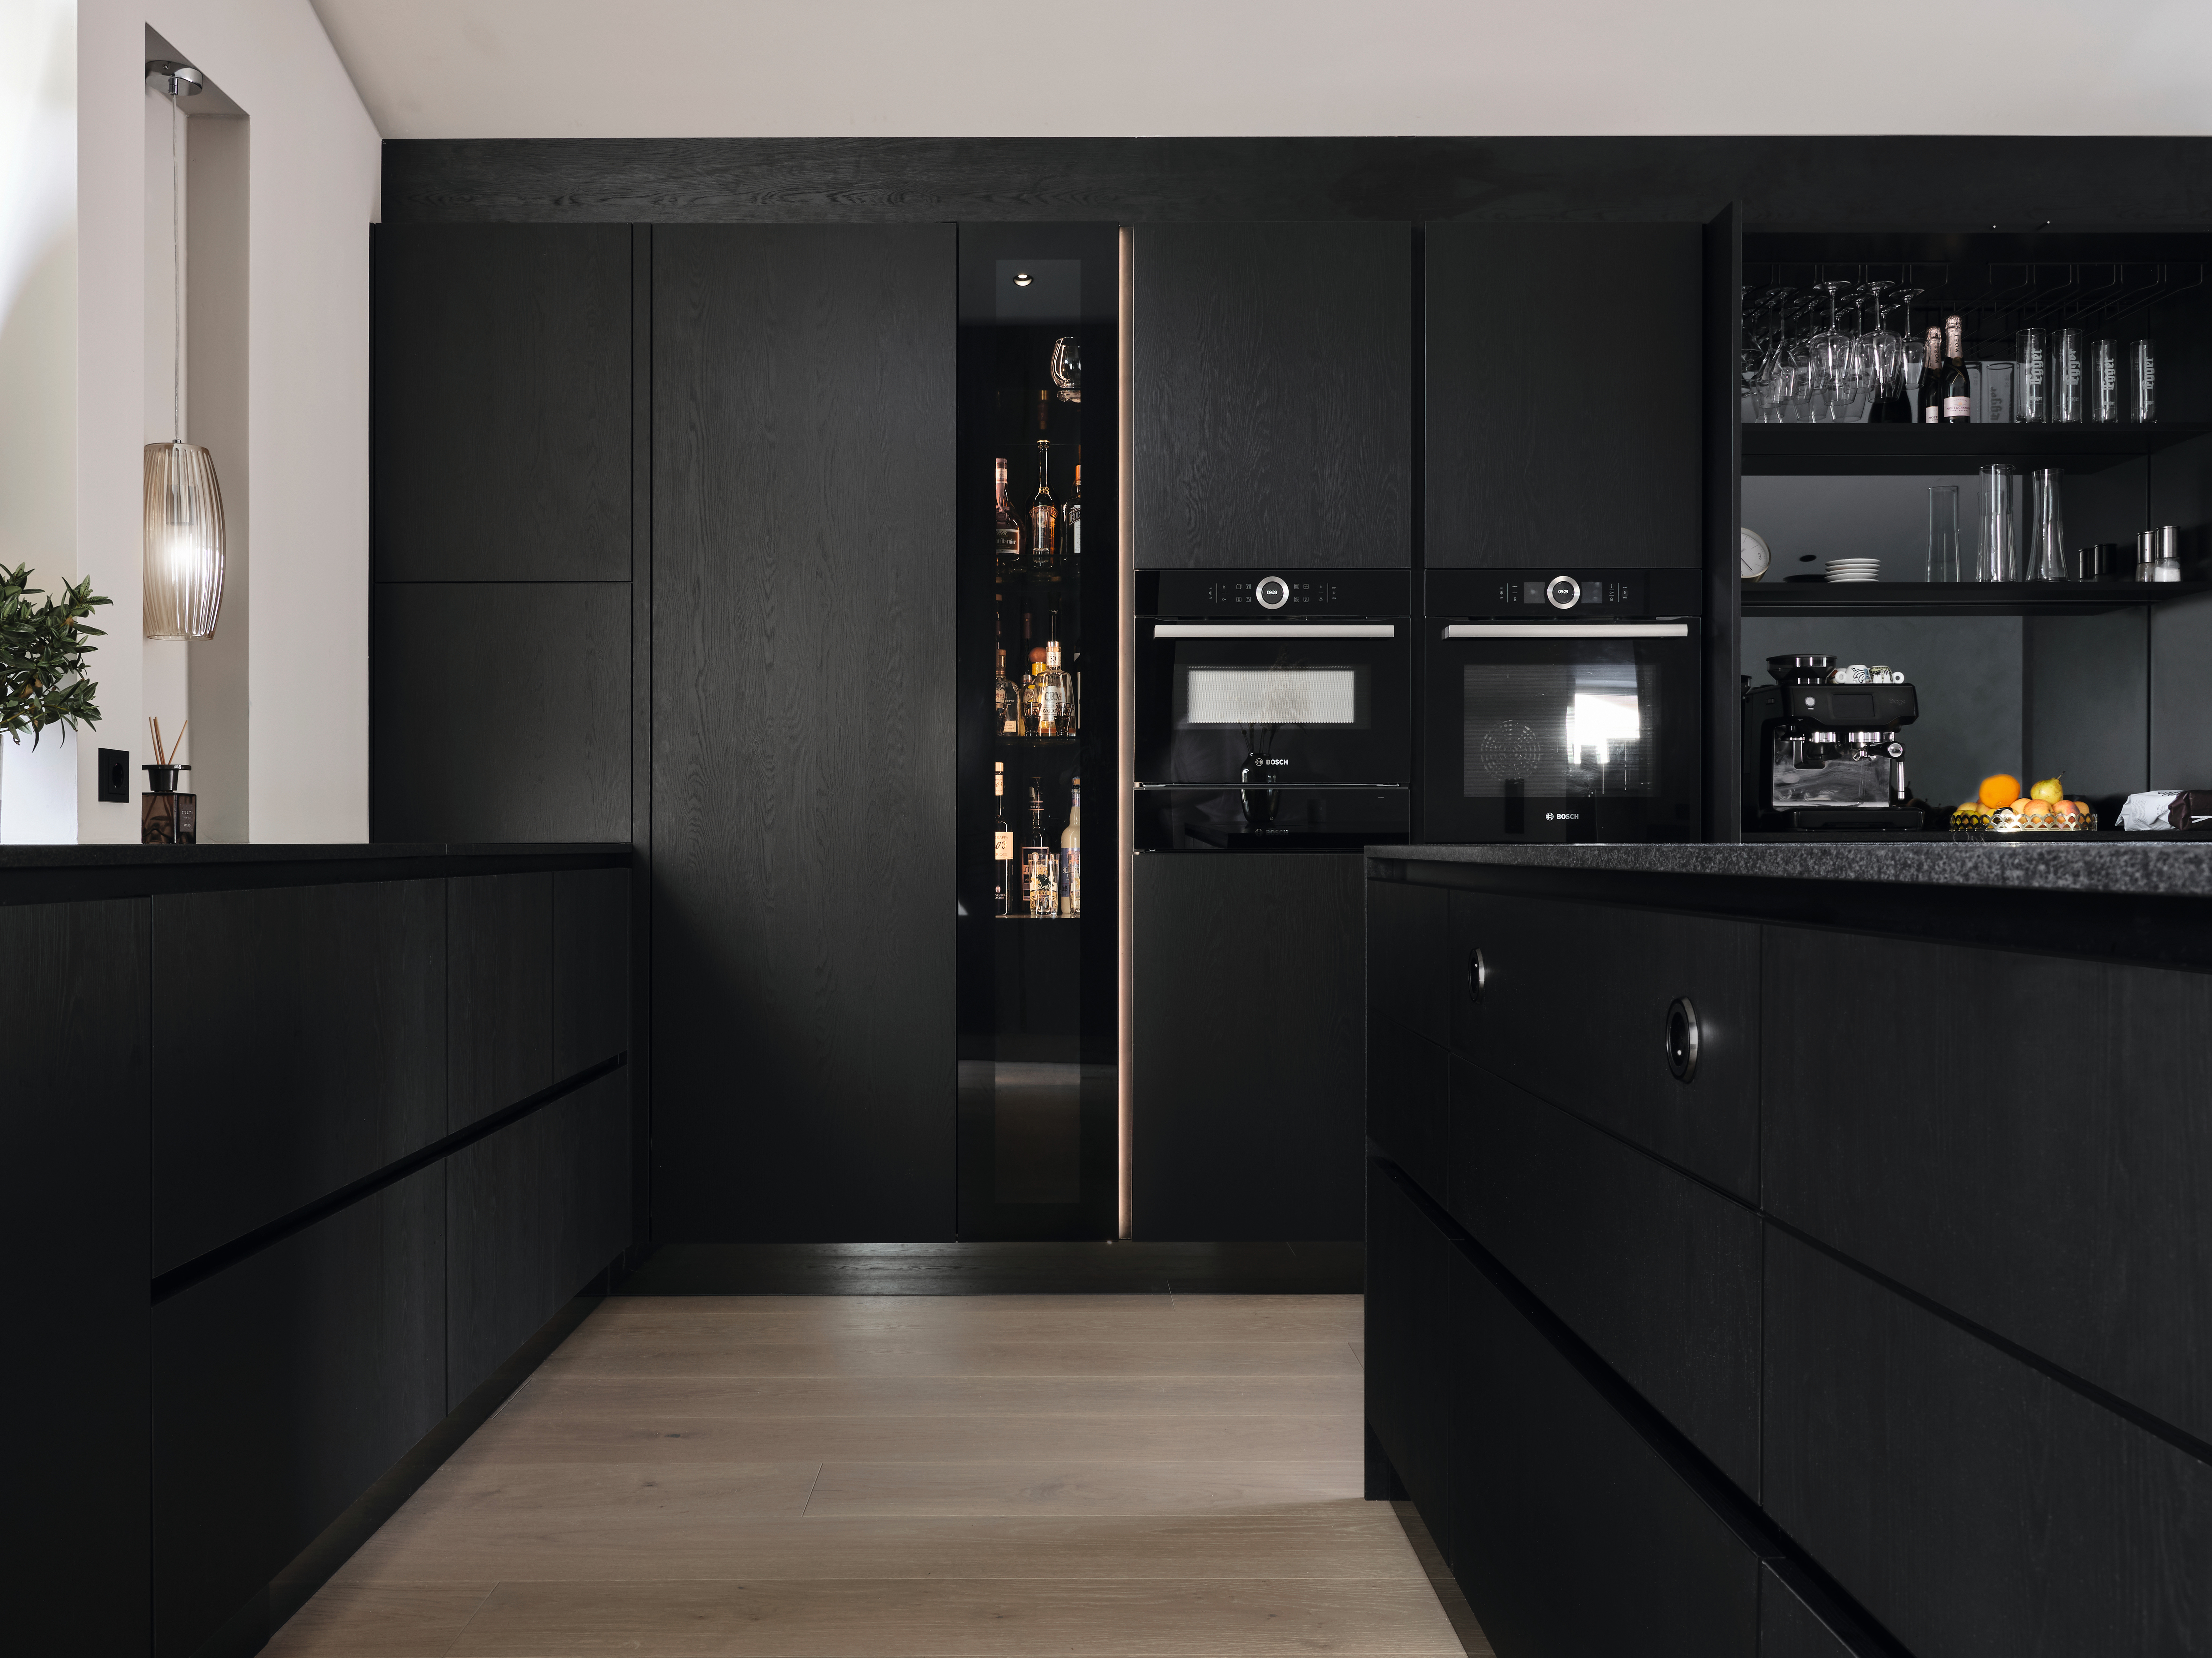 Les façades de meubles noires confèrent à la cuisine une touche de modernité.